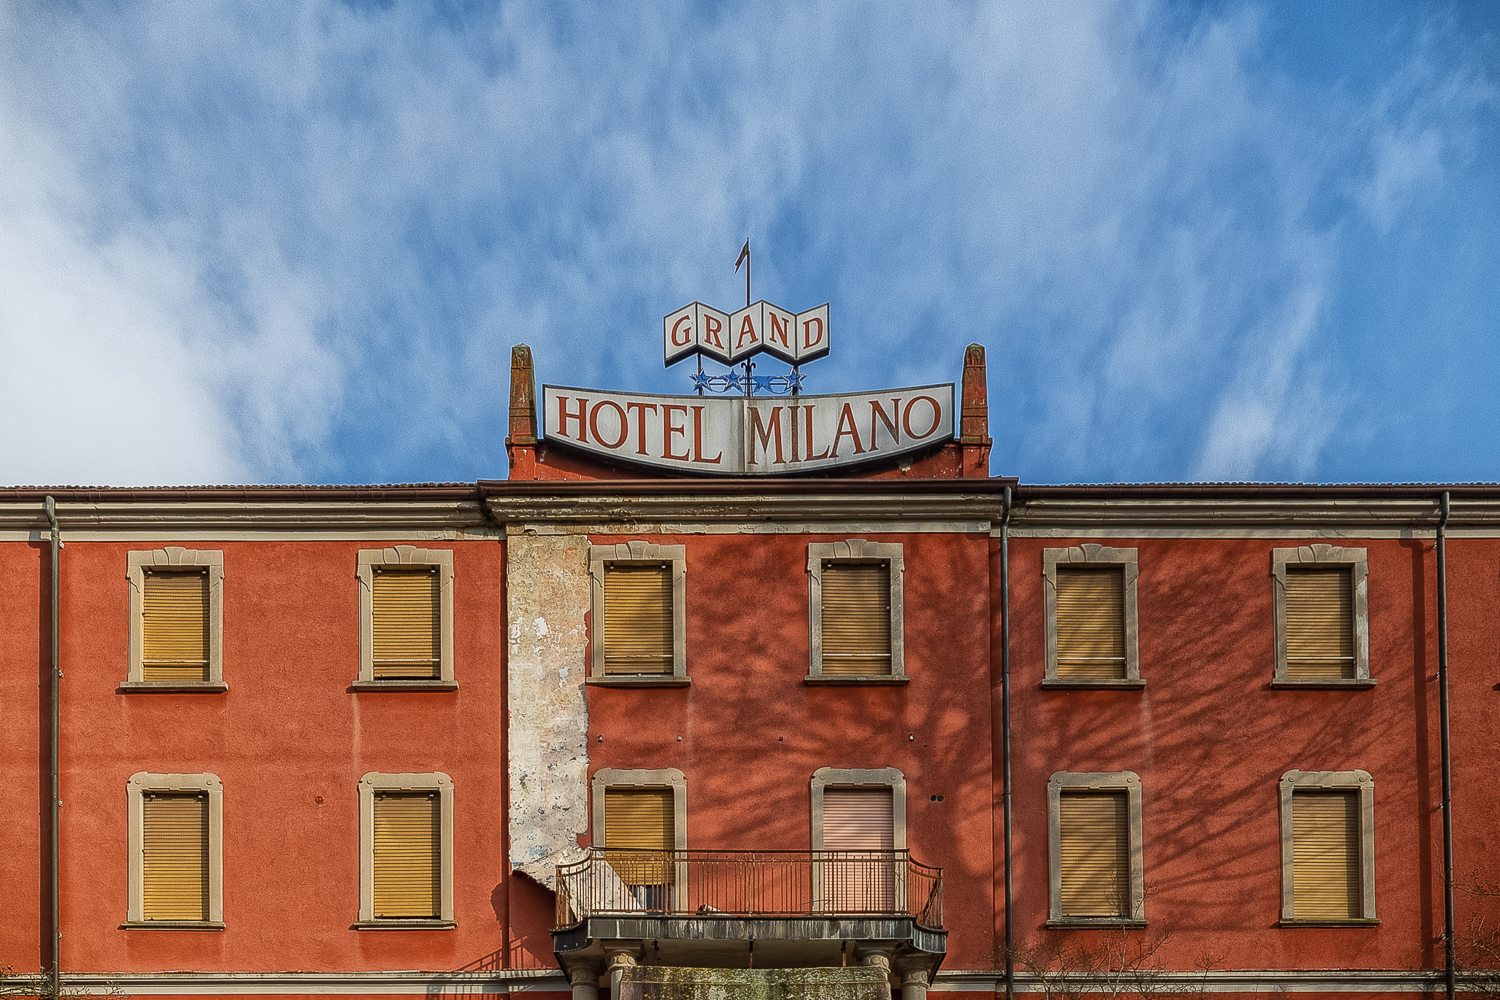 Grand Hotel Milano /18